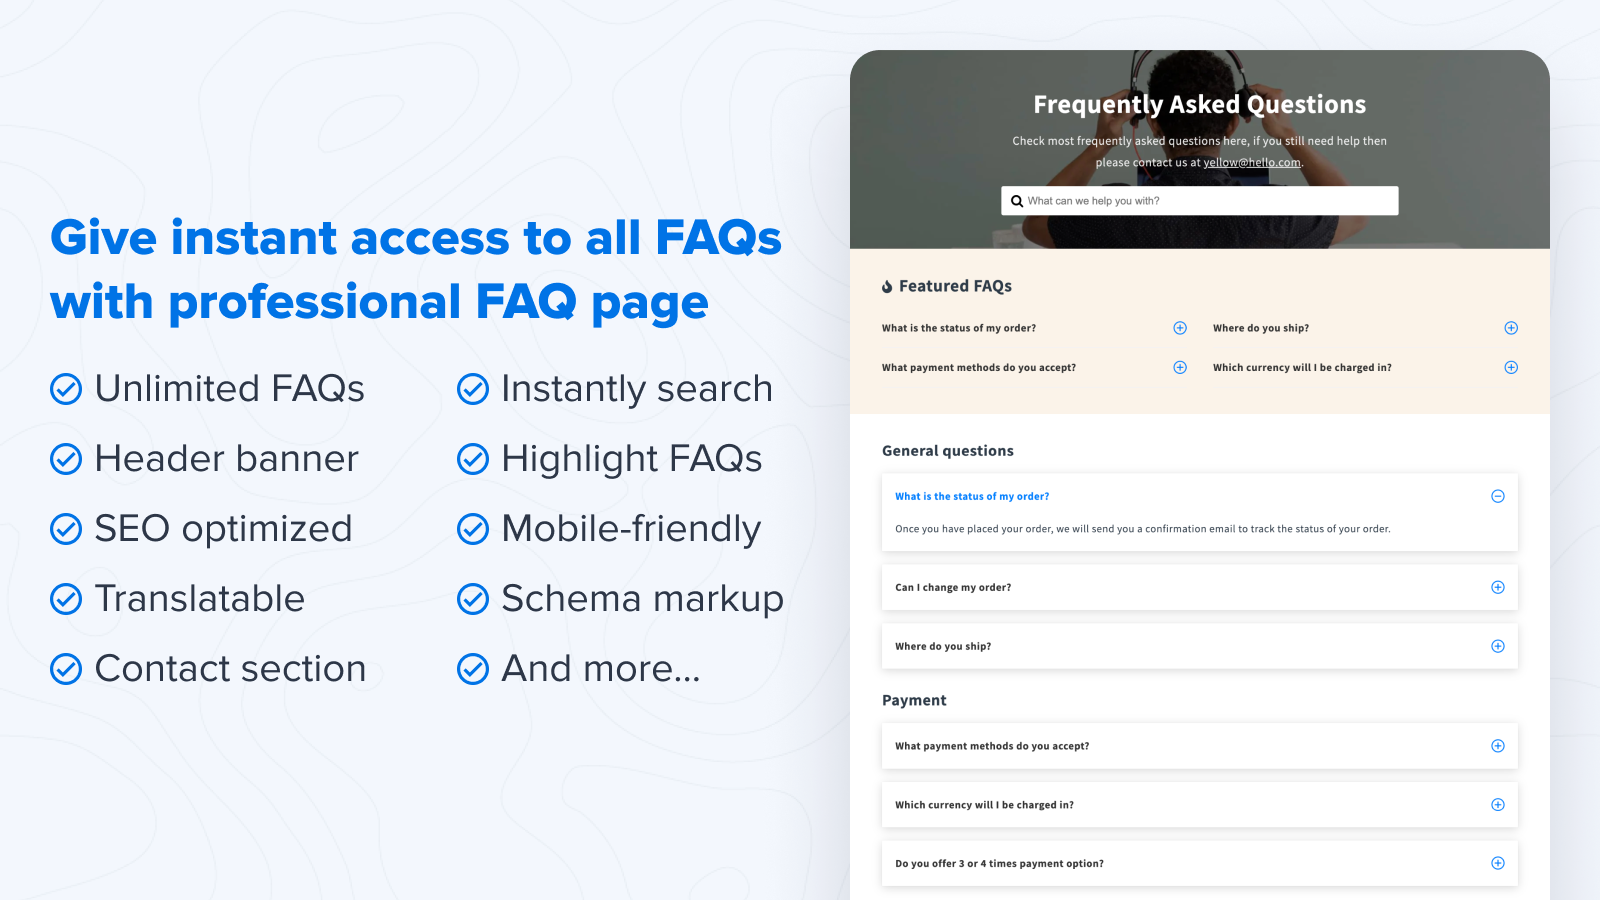 Proporciona acceso instantáneo a todas las FAQ con la página de FAQ